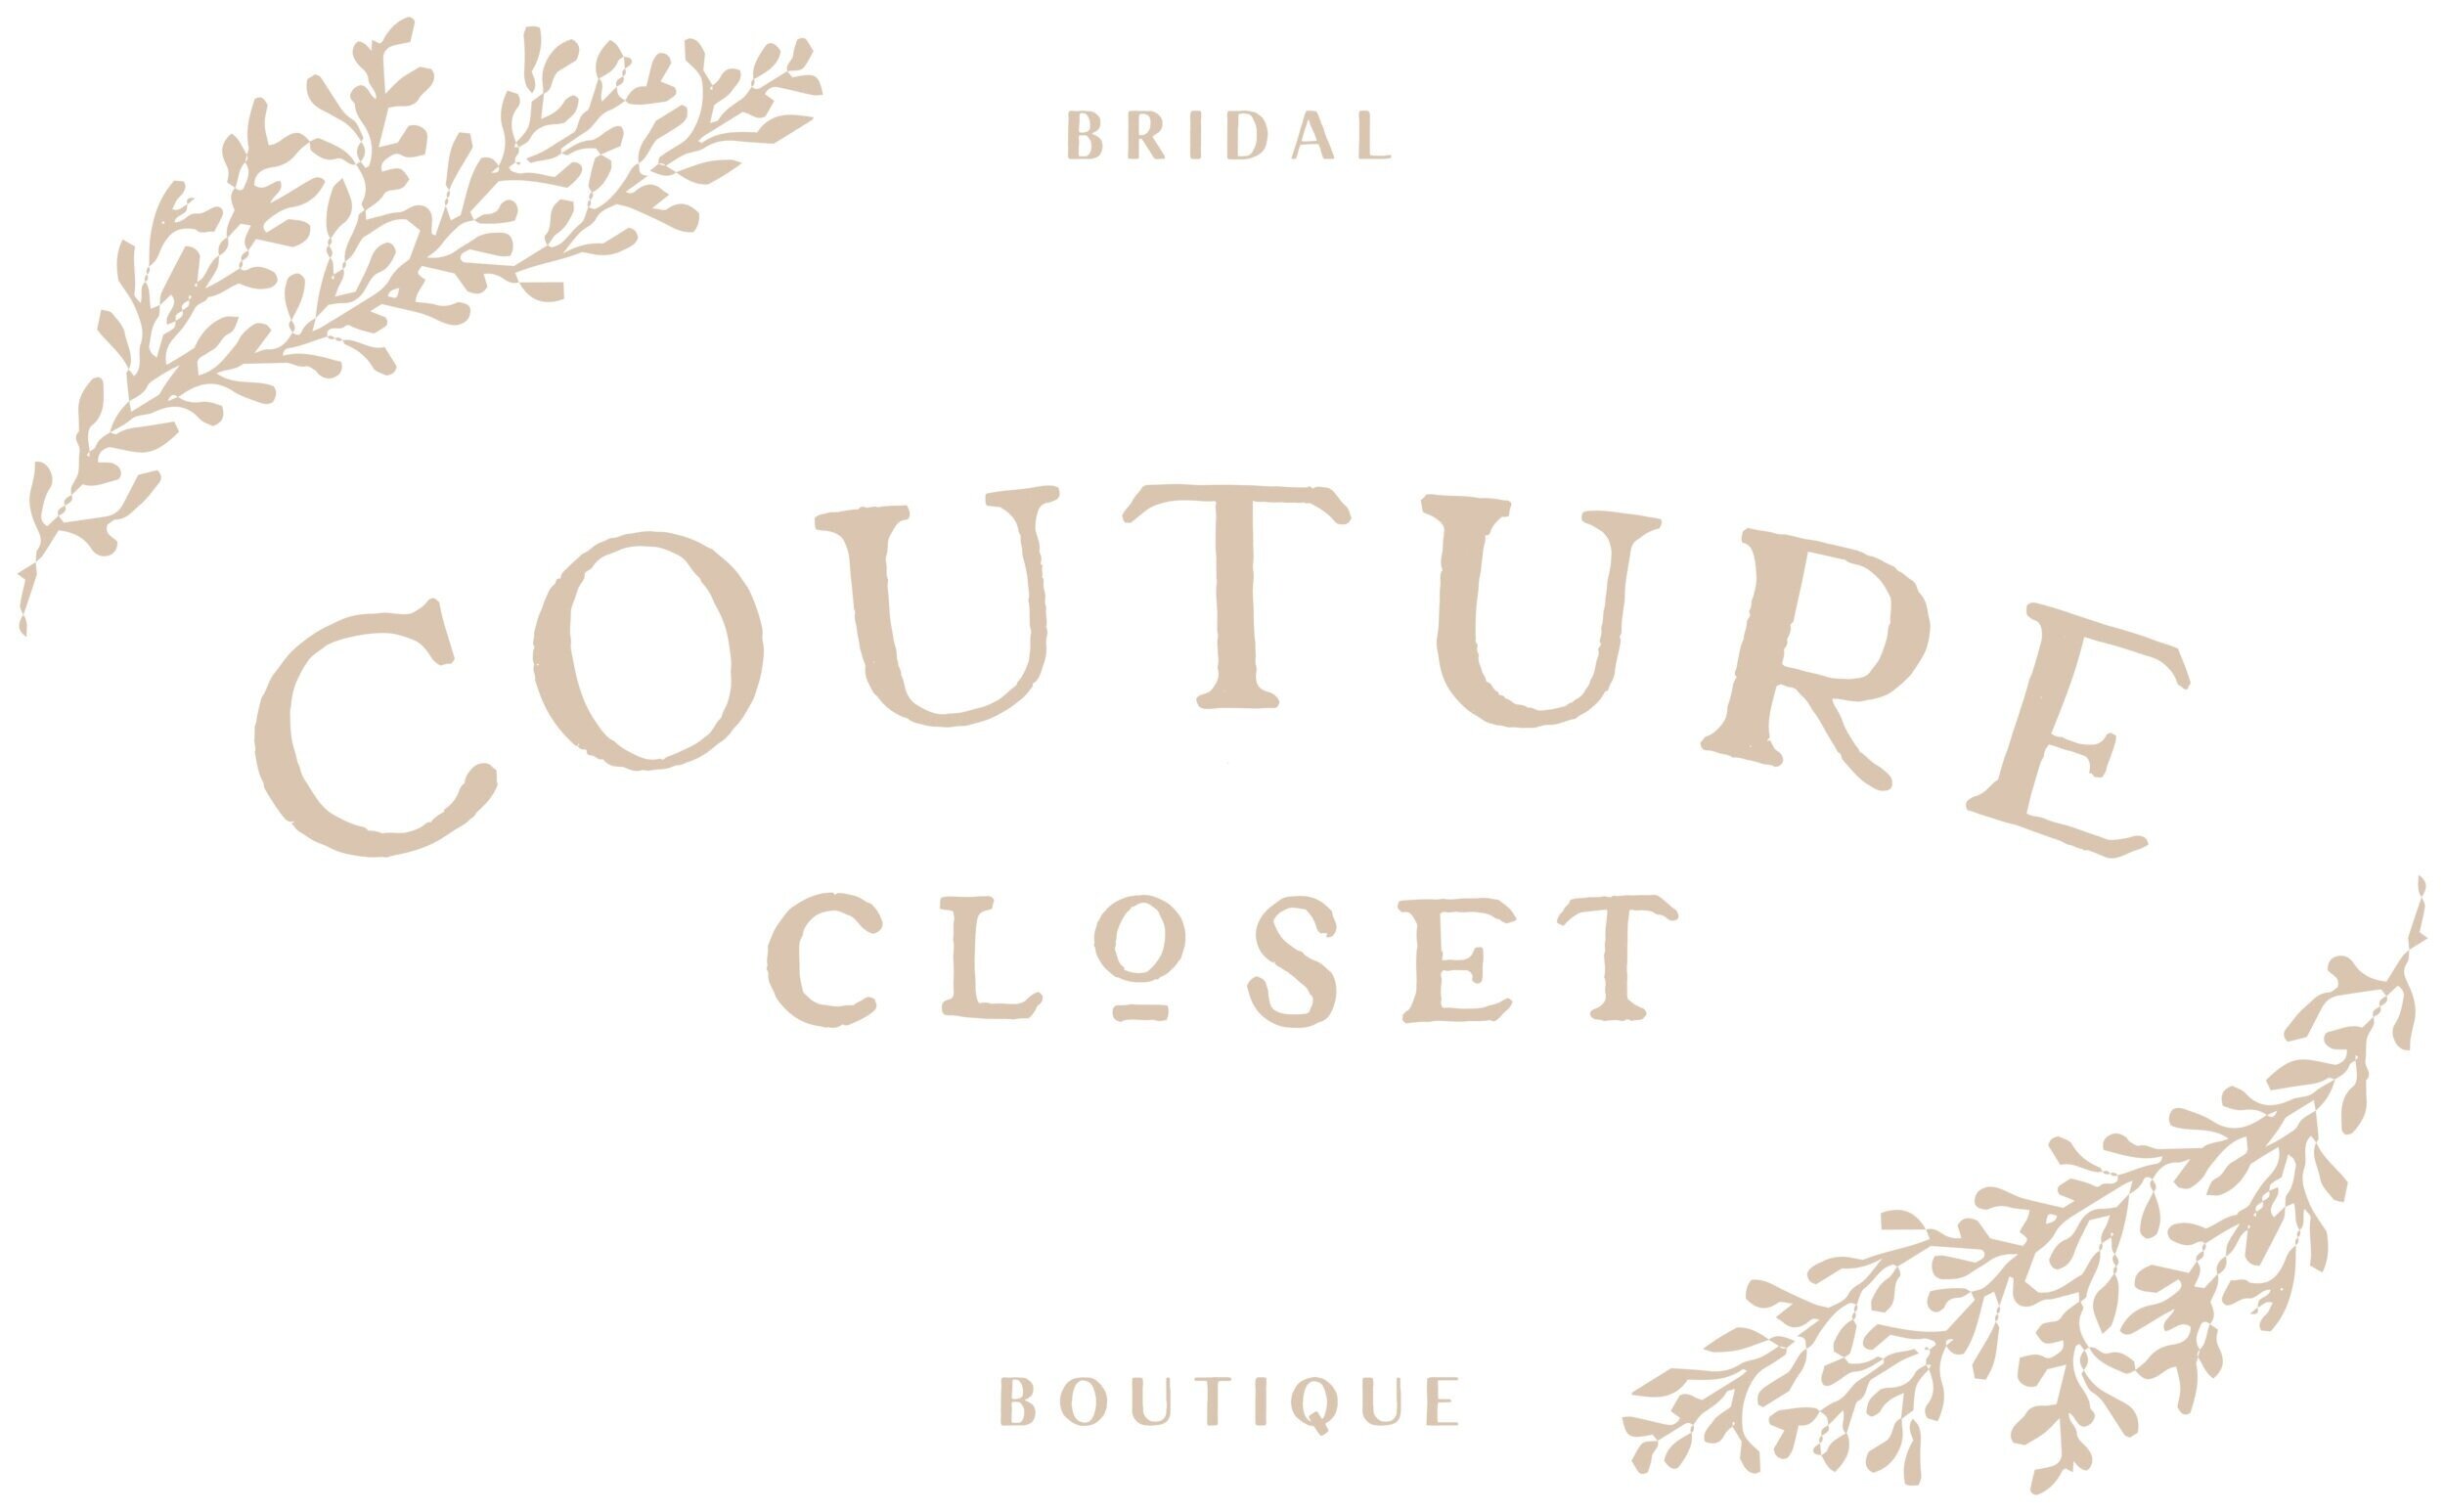 Couture Closet